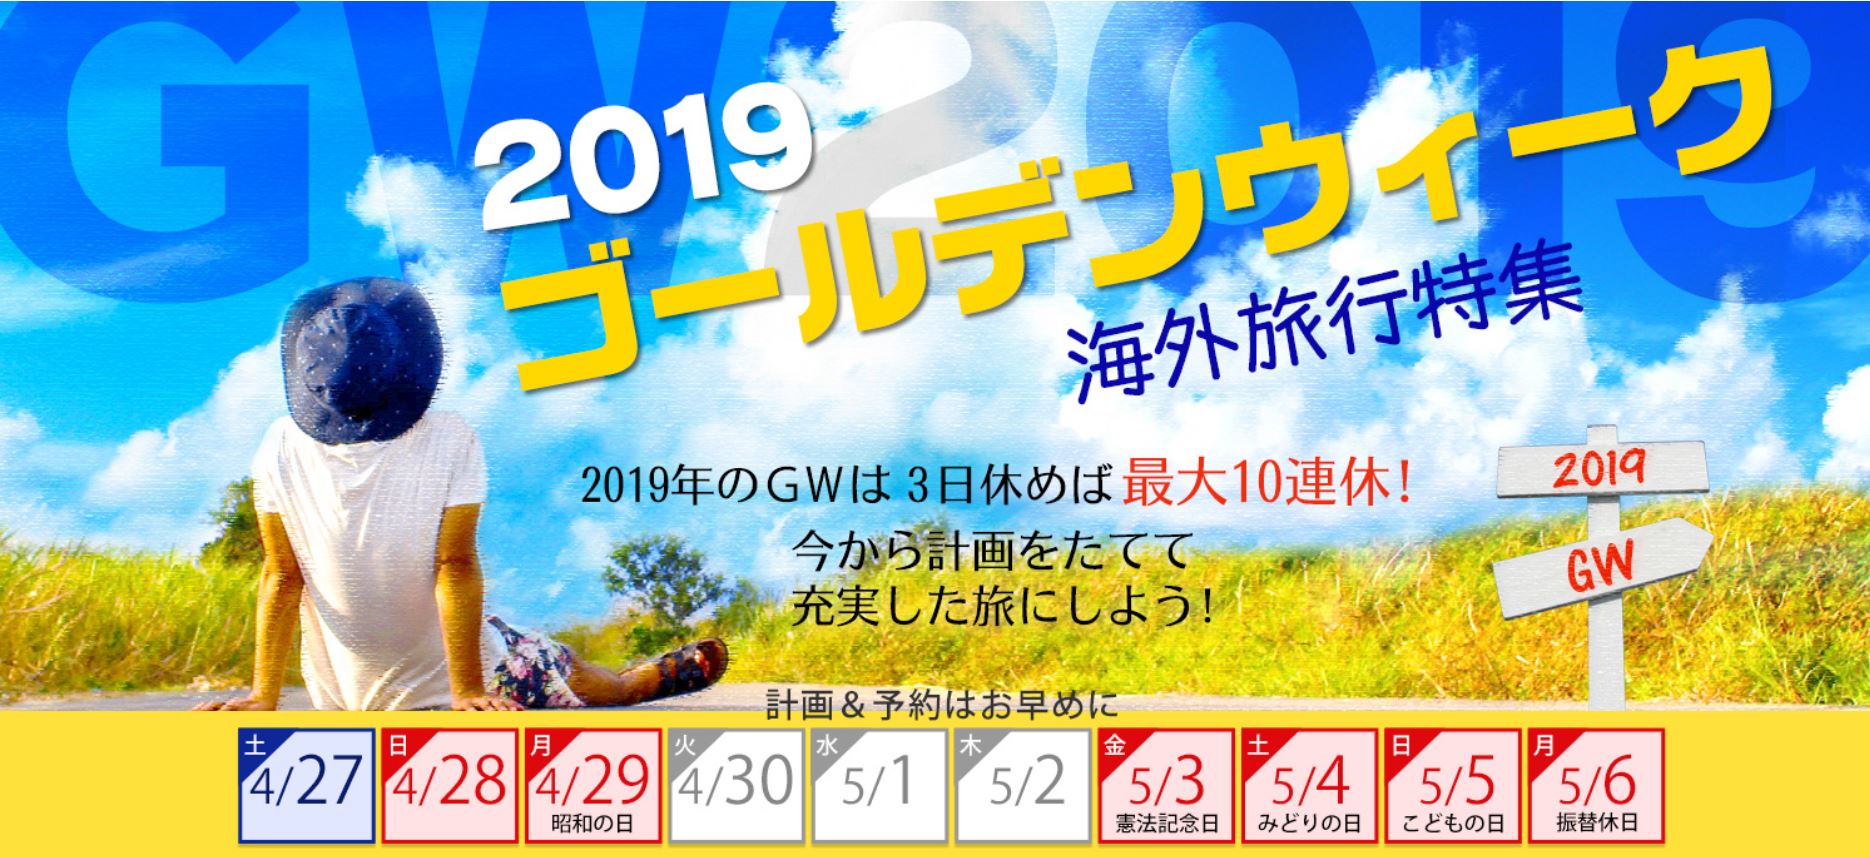 내년 4~5월 10일간의 골든위크를 맞아 일본 여행사들이 내놓은 해외여행 상품 안내 광고.   긴키니혼투어리스트 홈페이지 캡처  